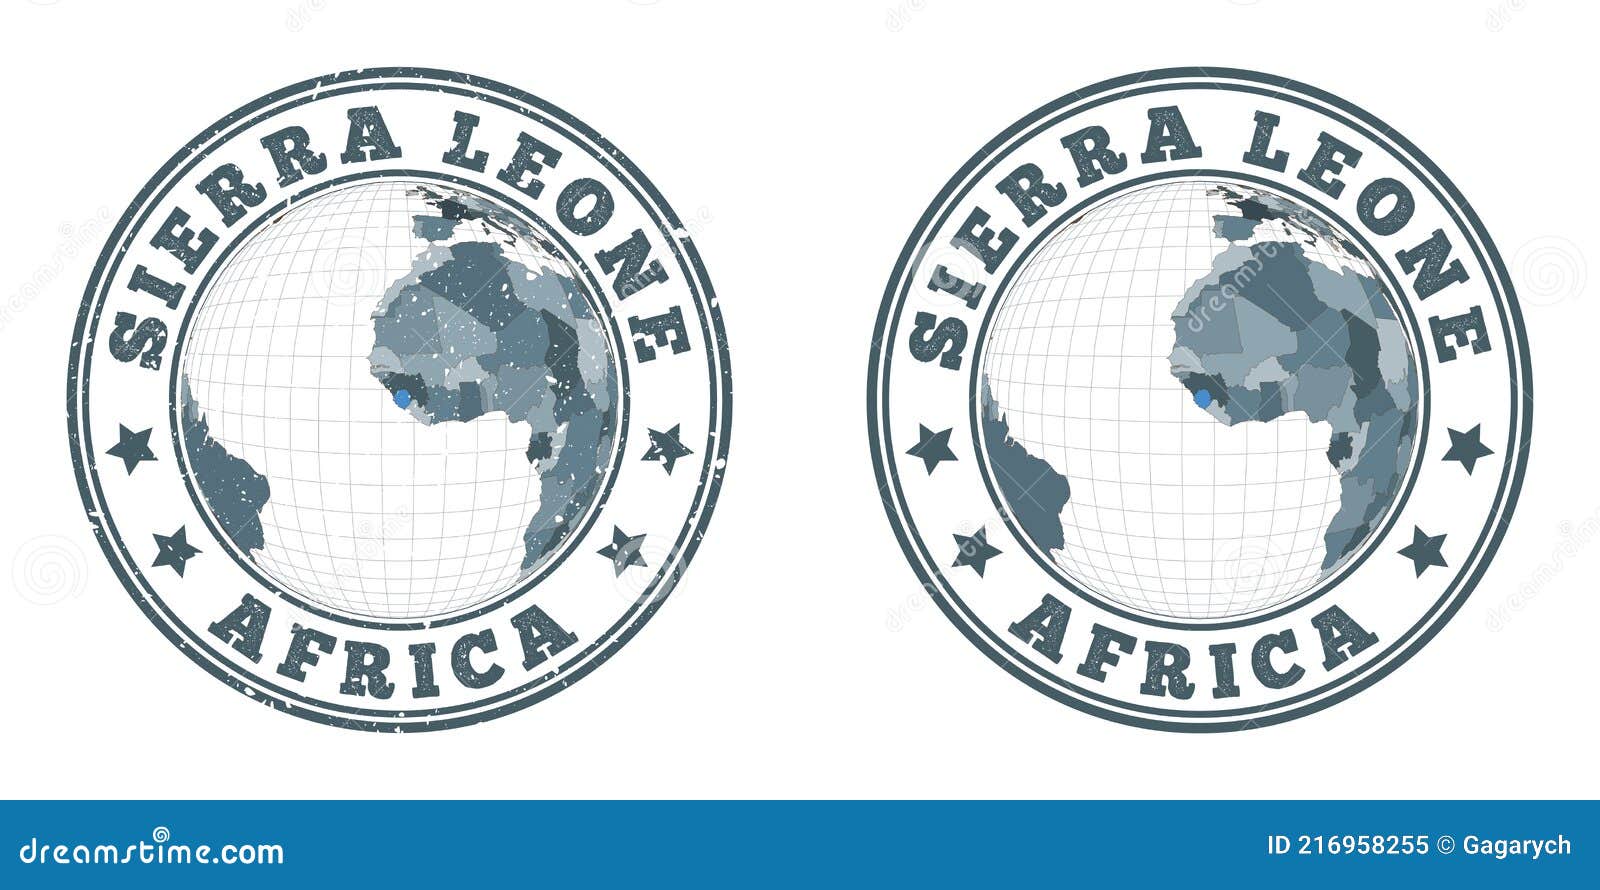 sierra leone round logos.